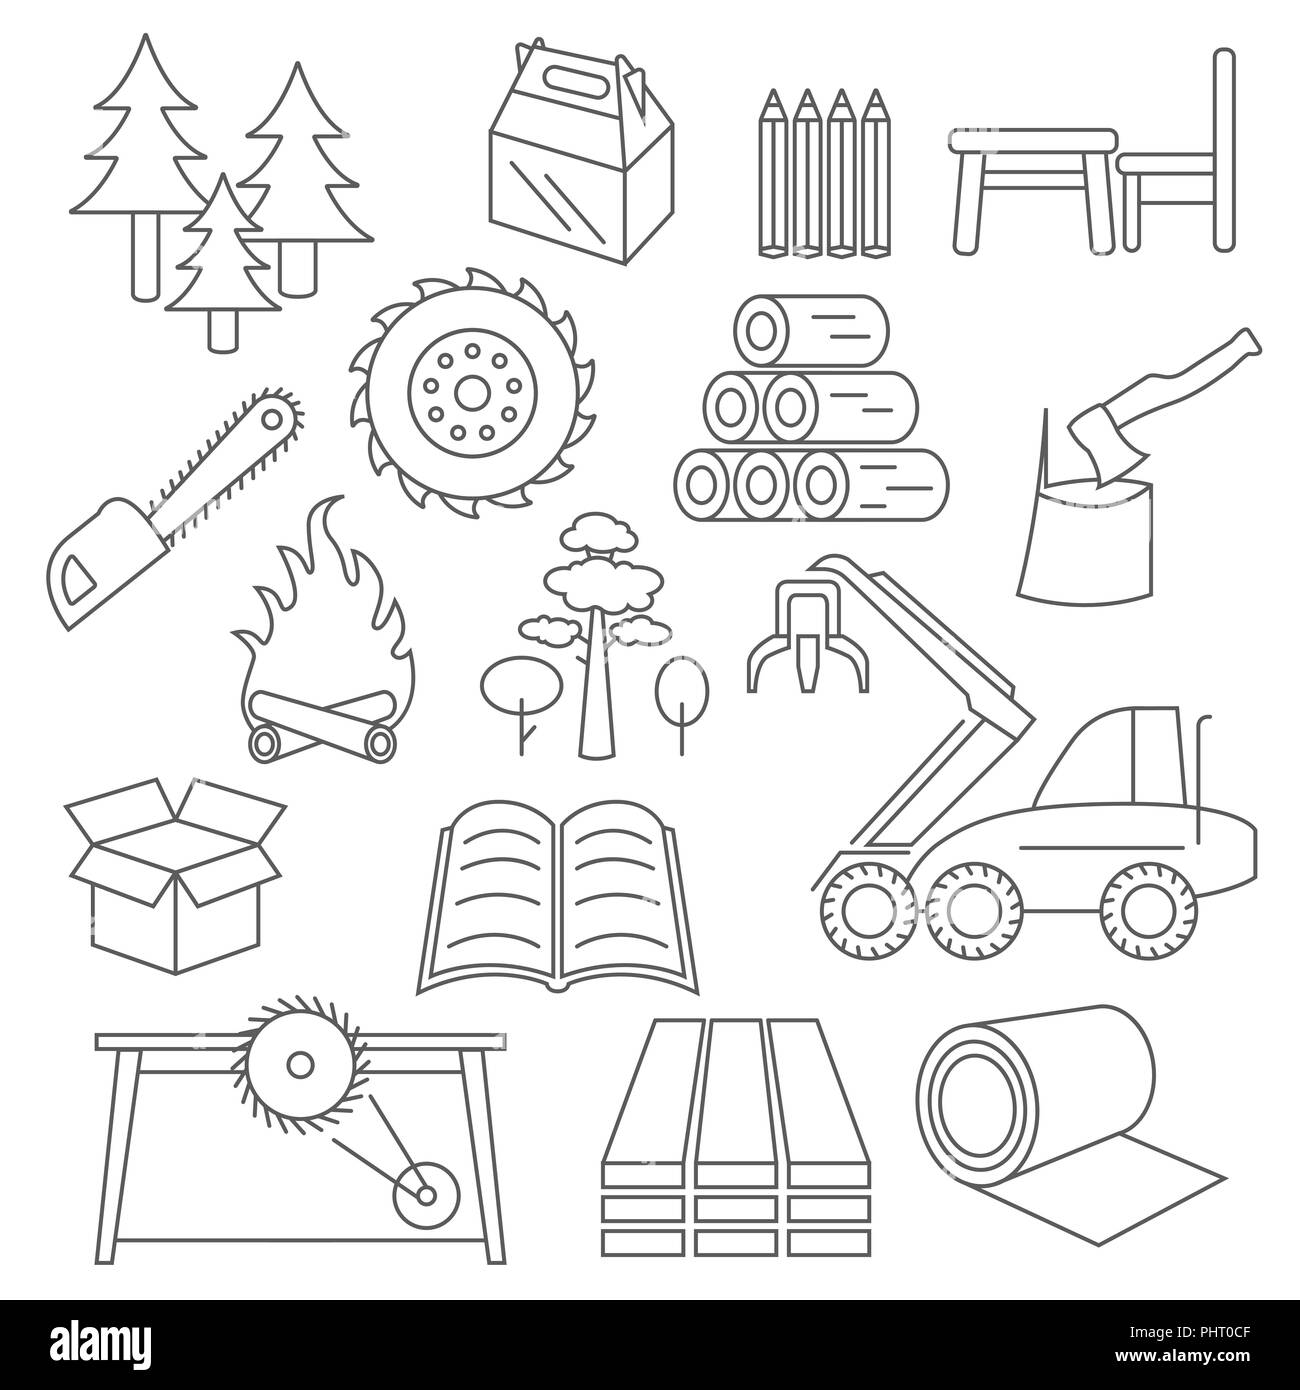 Zellstoff-, Papier- und Holzprodukte Icon Set. Thin Line Design isoliert auf Weiss. Ihre industriellen Infografiken Sammlung erstellen. Vector Illustration Stock Vektor